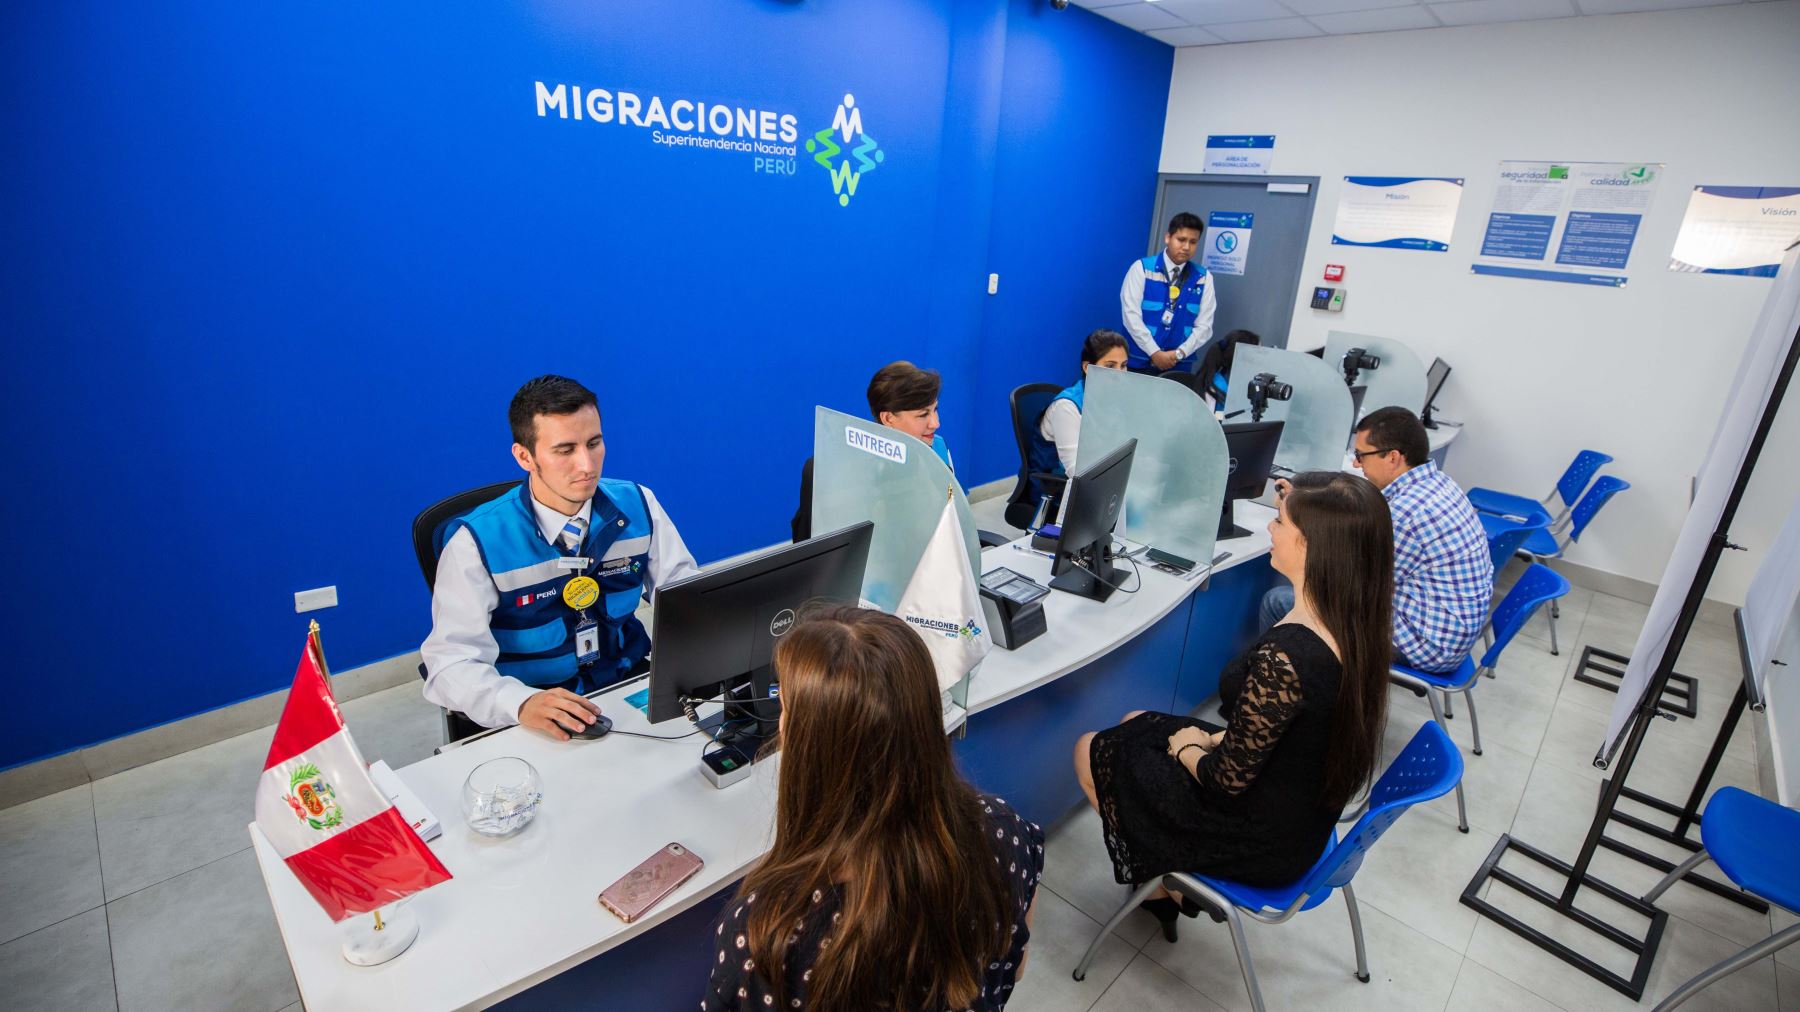 Migraciones: Cómo solicitar una cita para renovar tu pasaporte